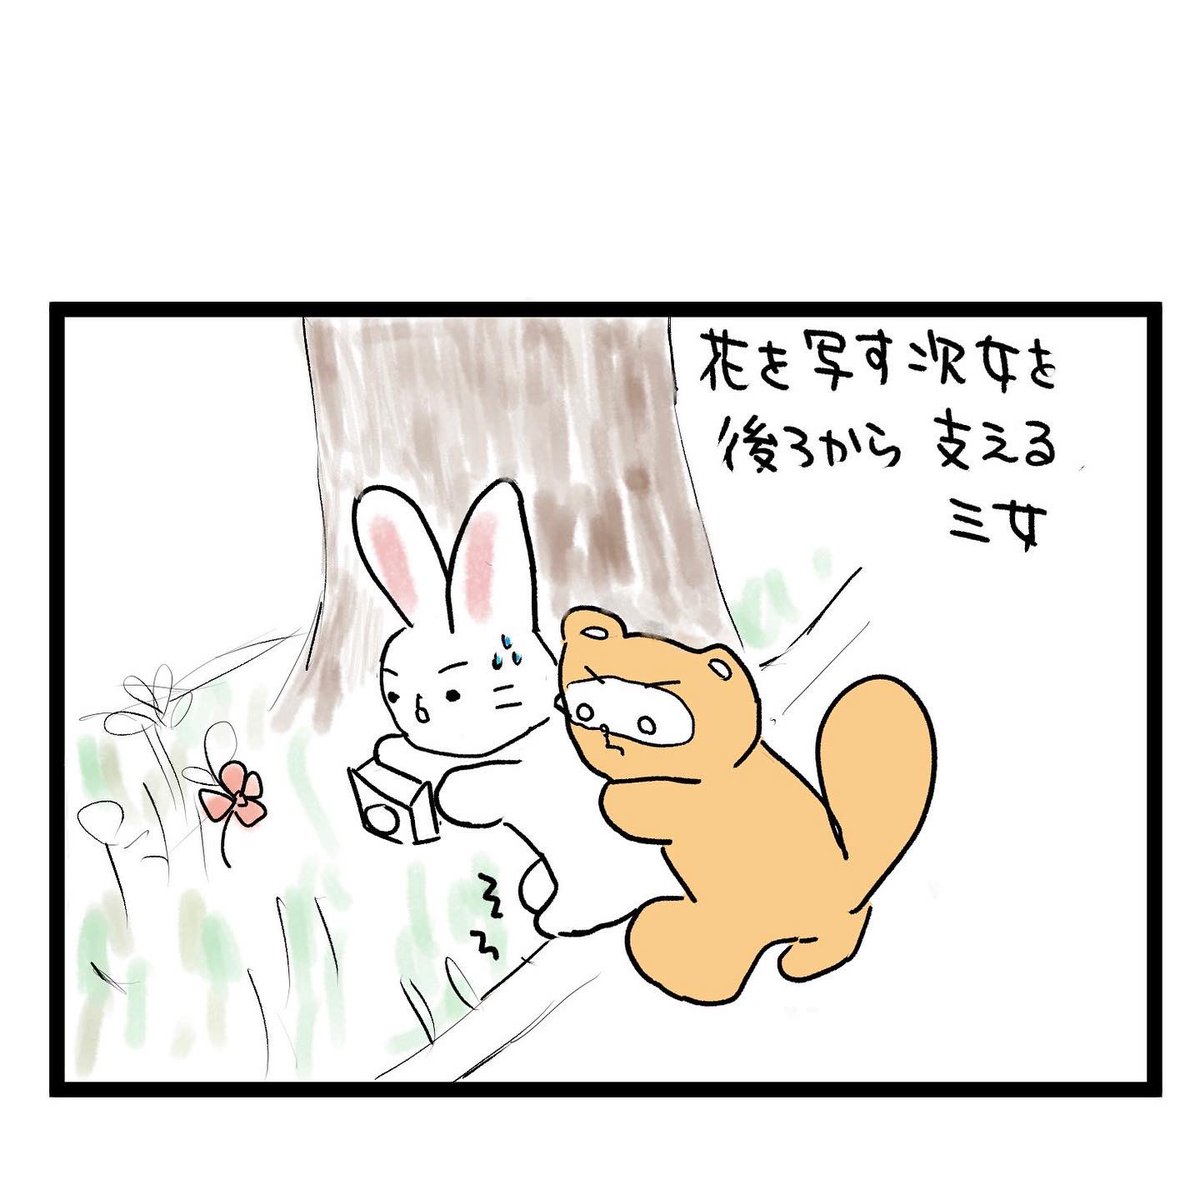 #四コマ漫画
#桜 